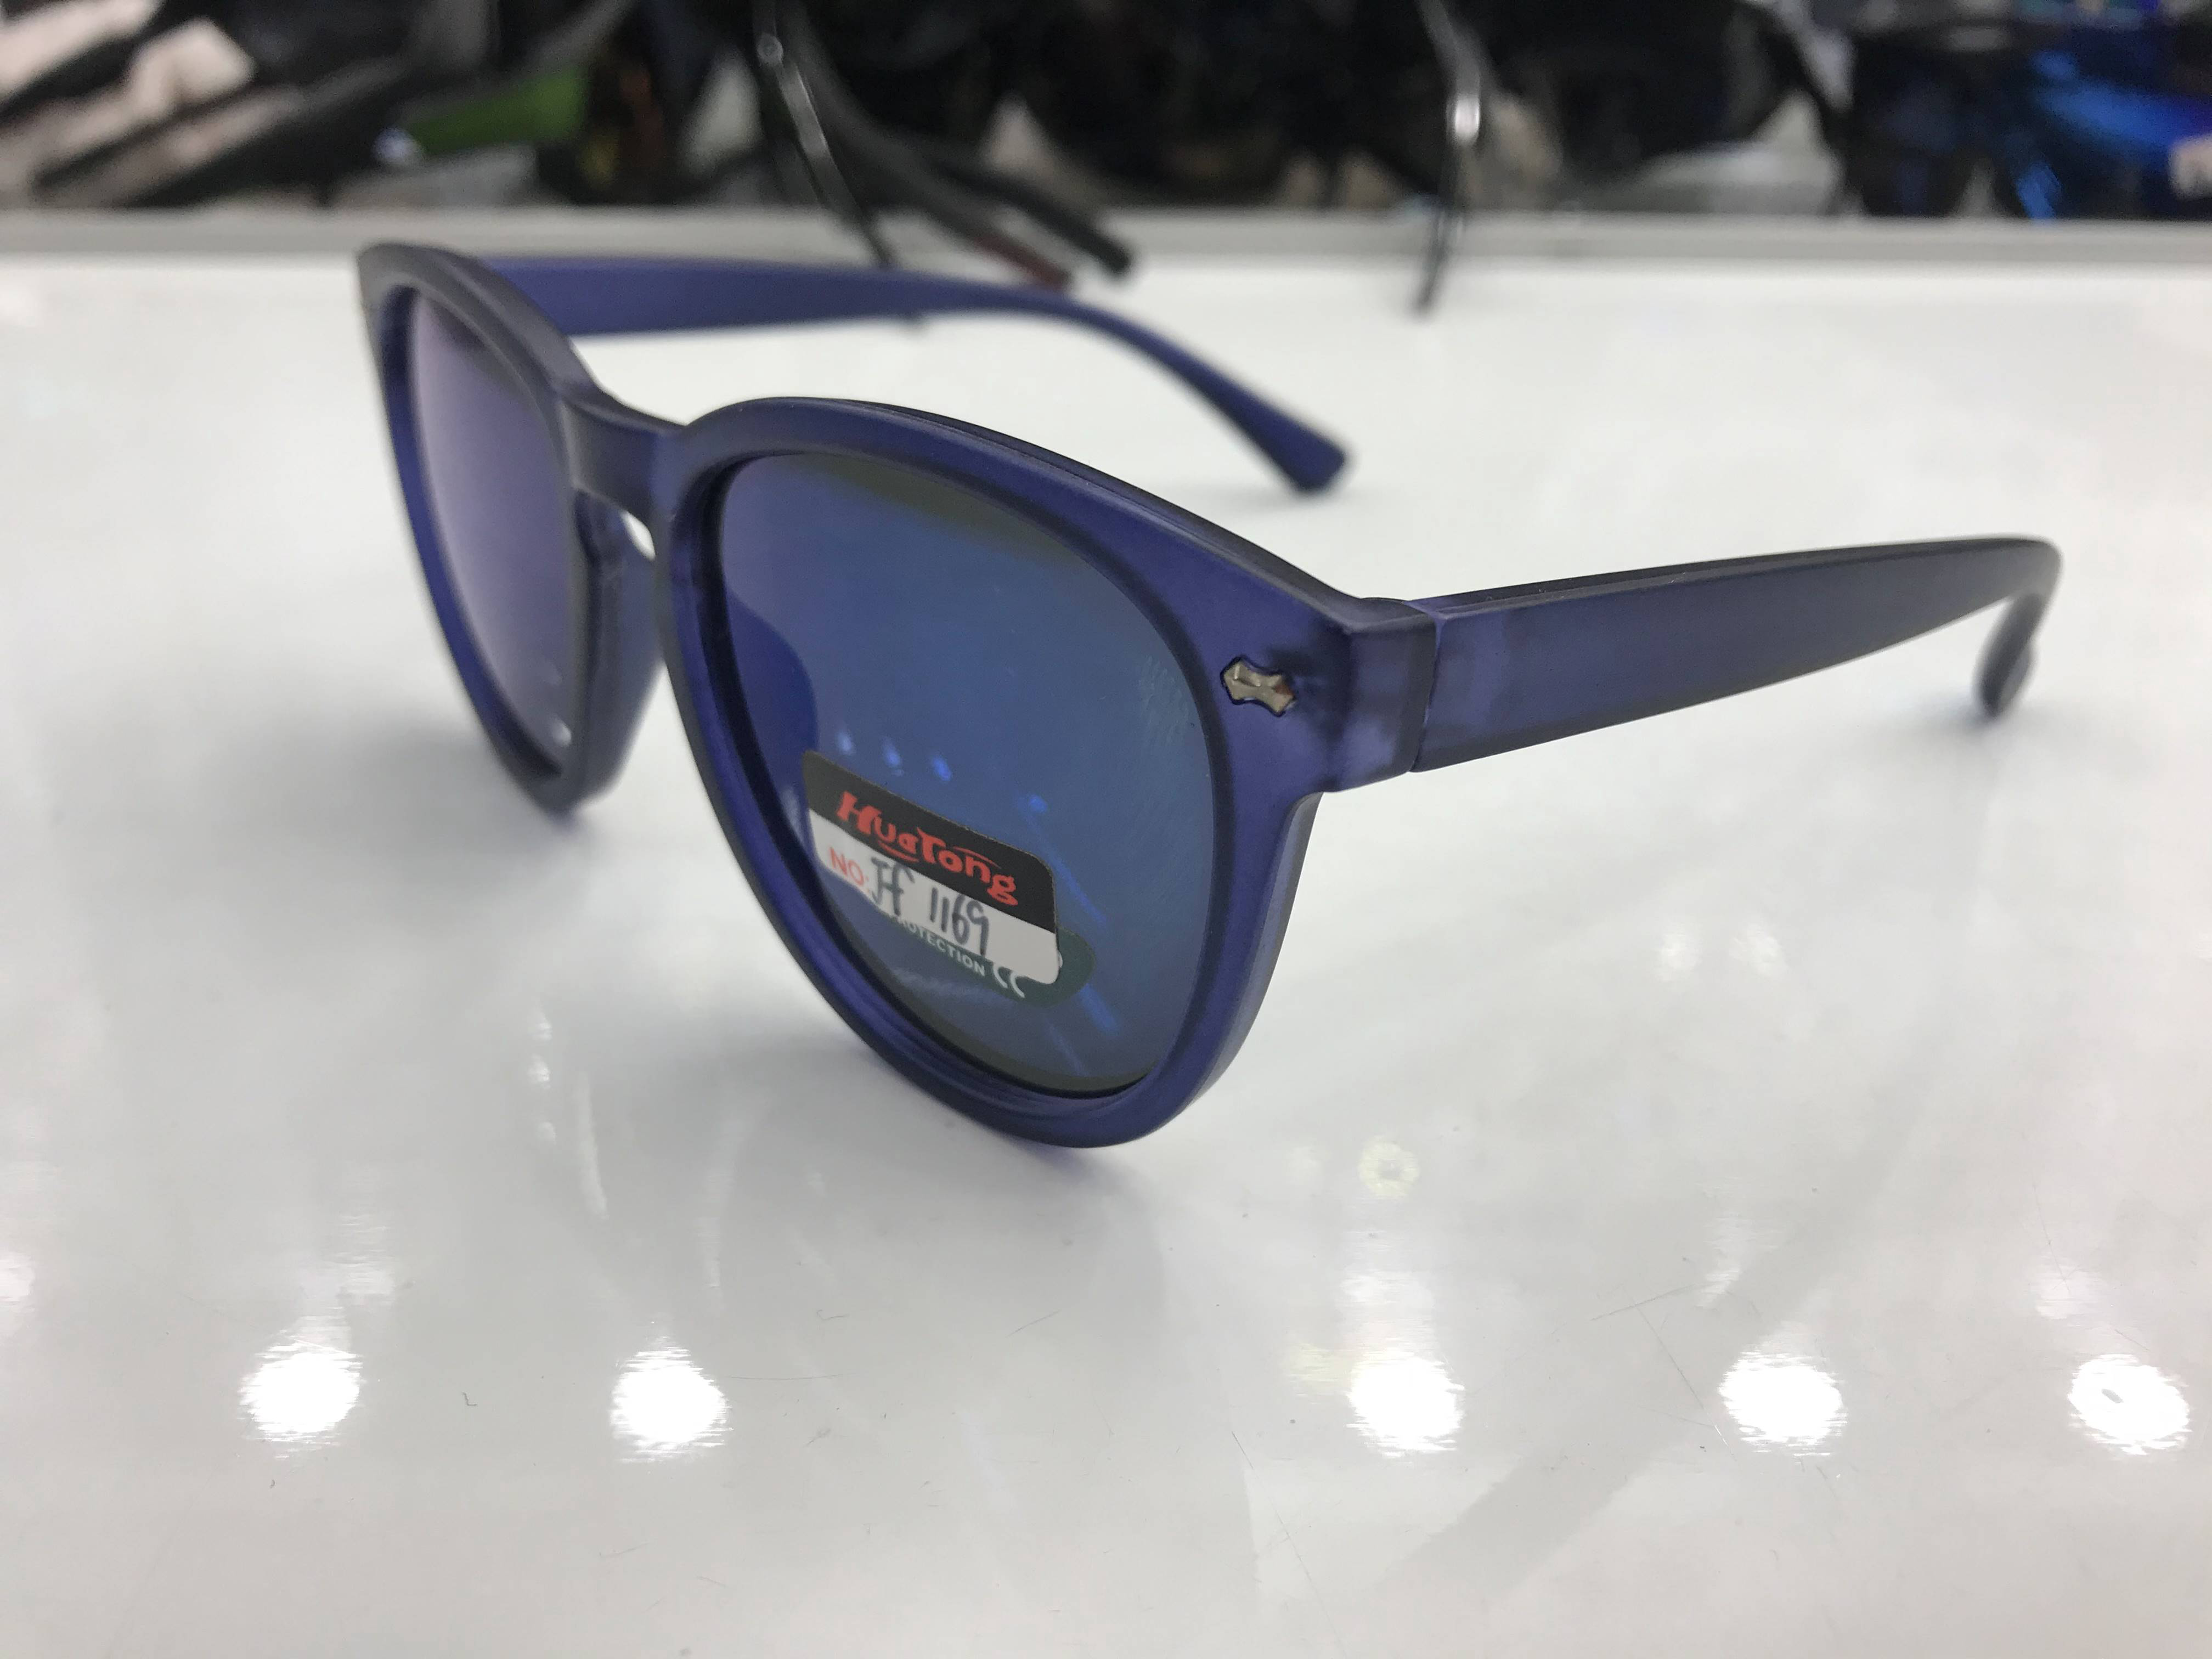 2020最新款儿童时尚太阳镜防紫外线UV400镜片眼镜产品图